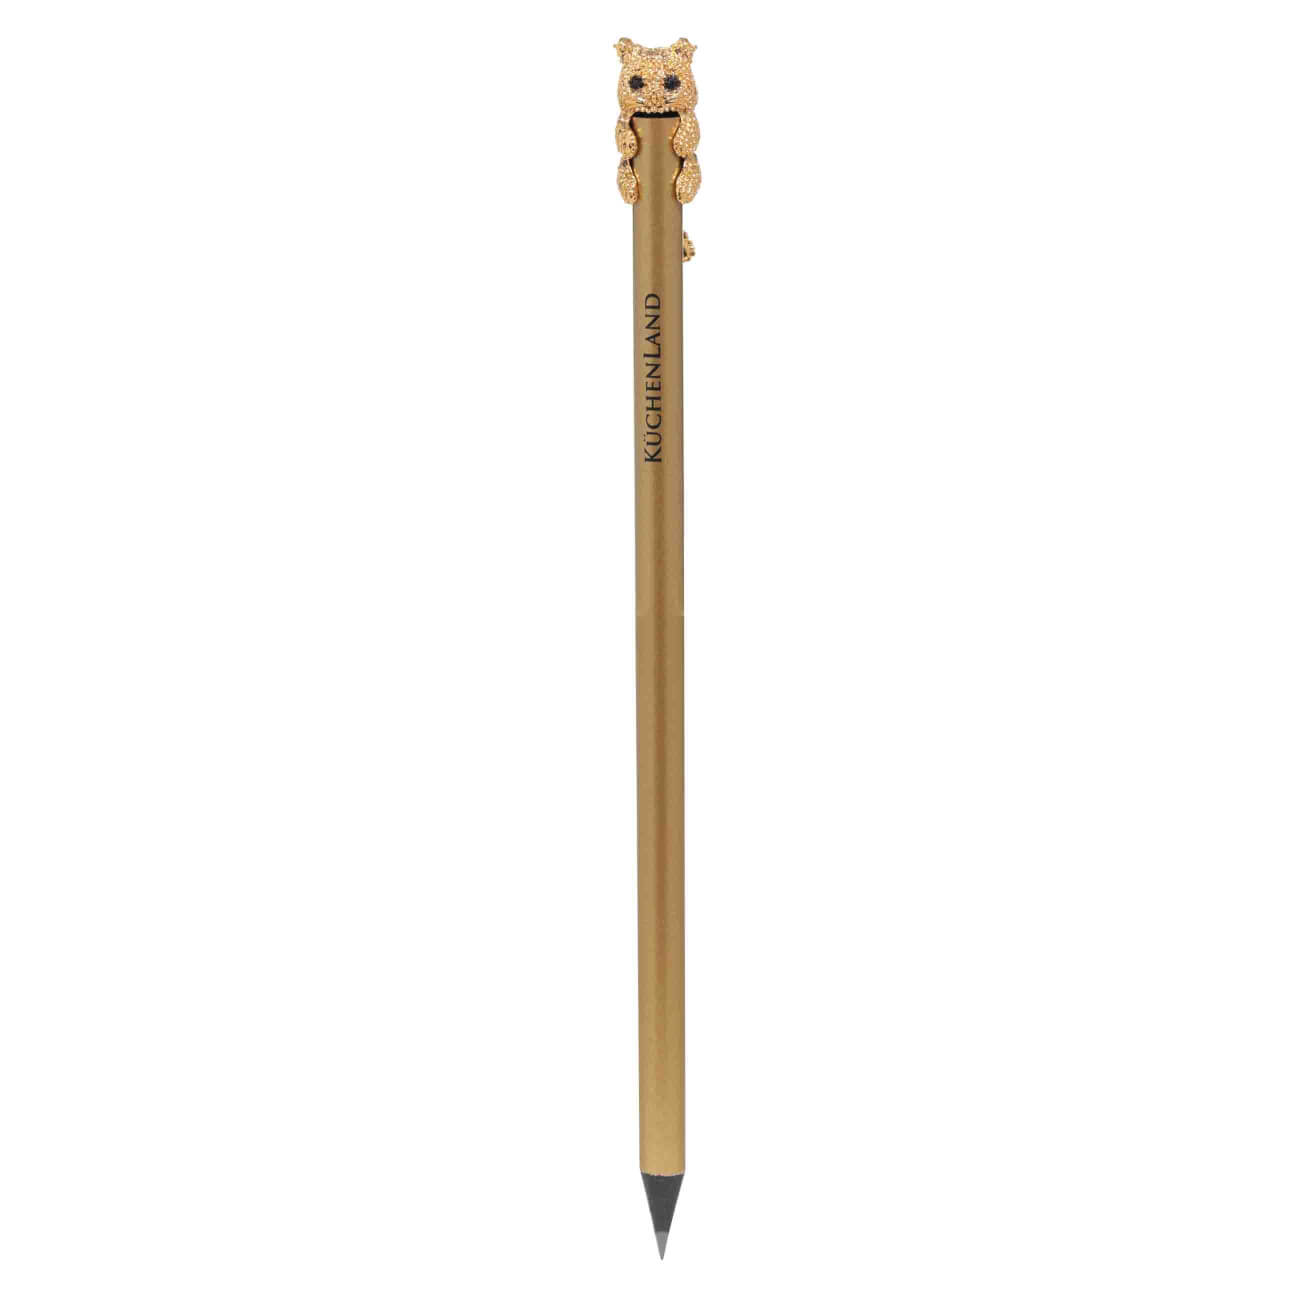 Карандаш, 18 см, чернографитный, с фигуркой, золотистый, Кот, Draw чернографитный карандаш berlingo